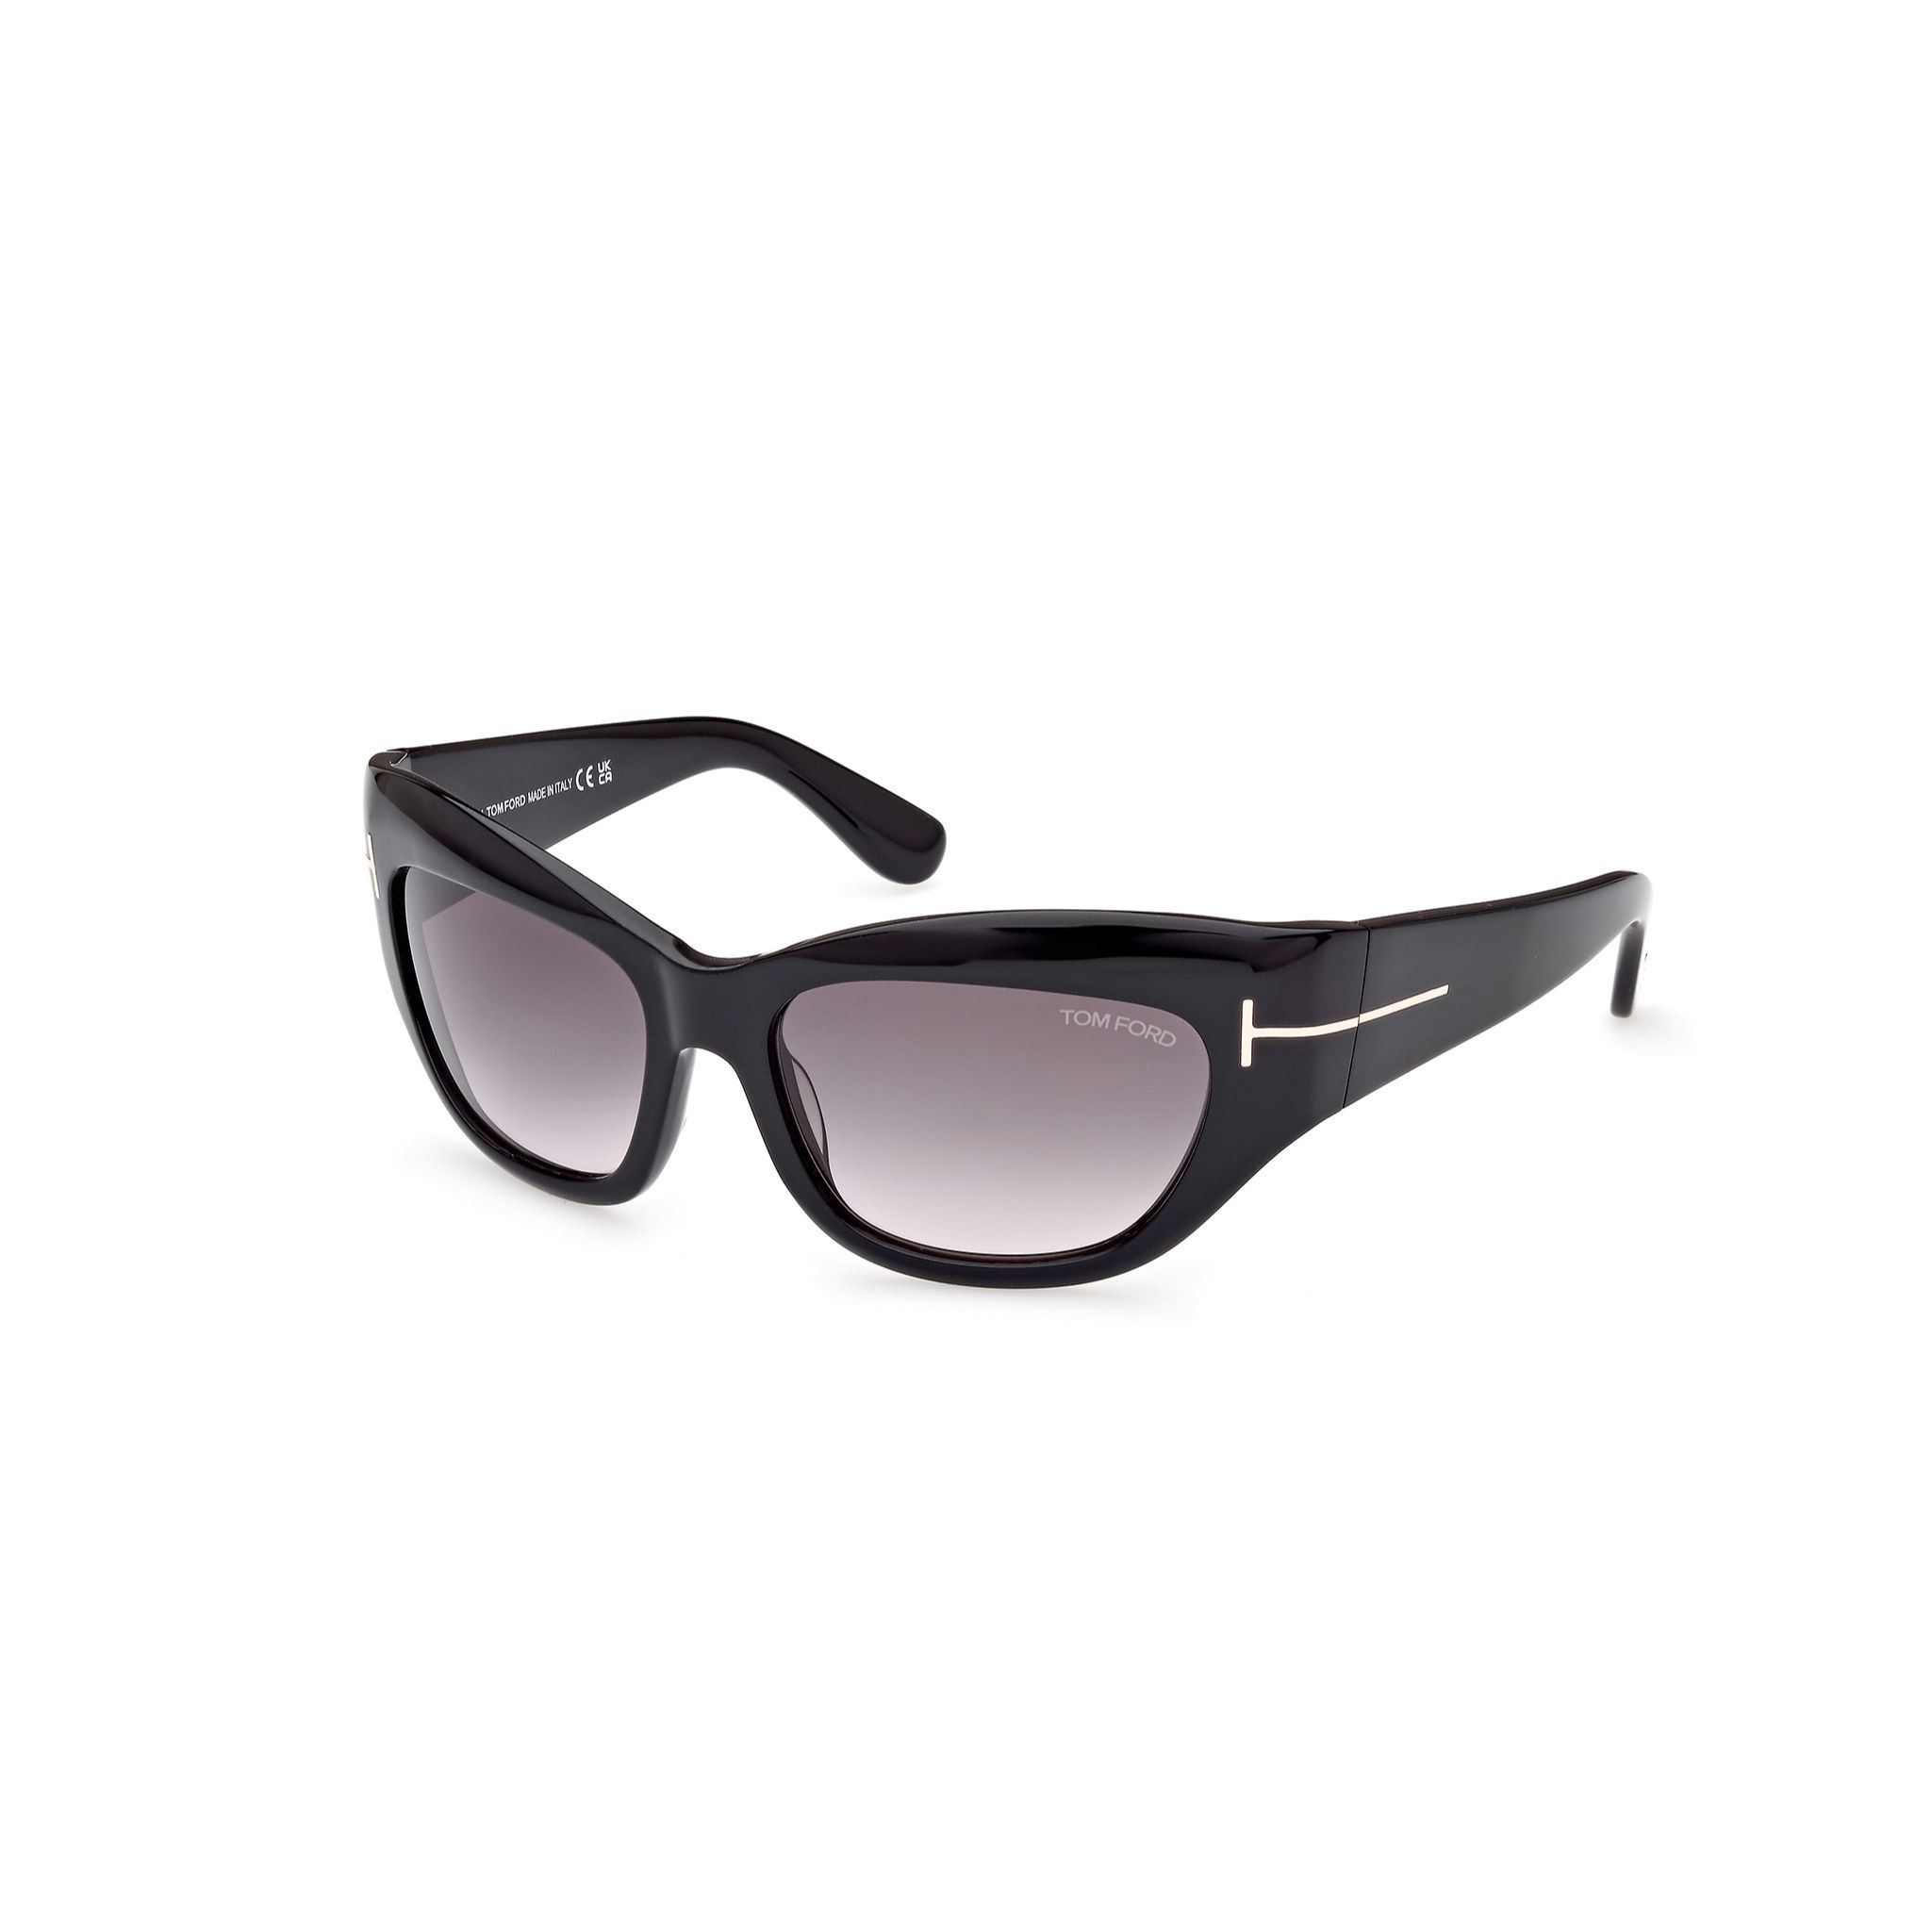 FT1065 Cateye Sunglasses 1B - size 55